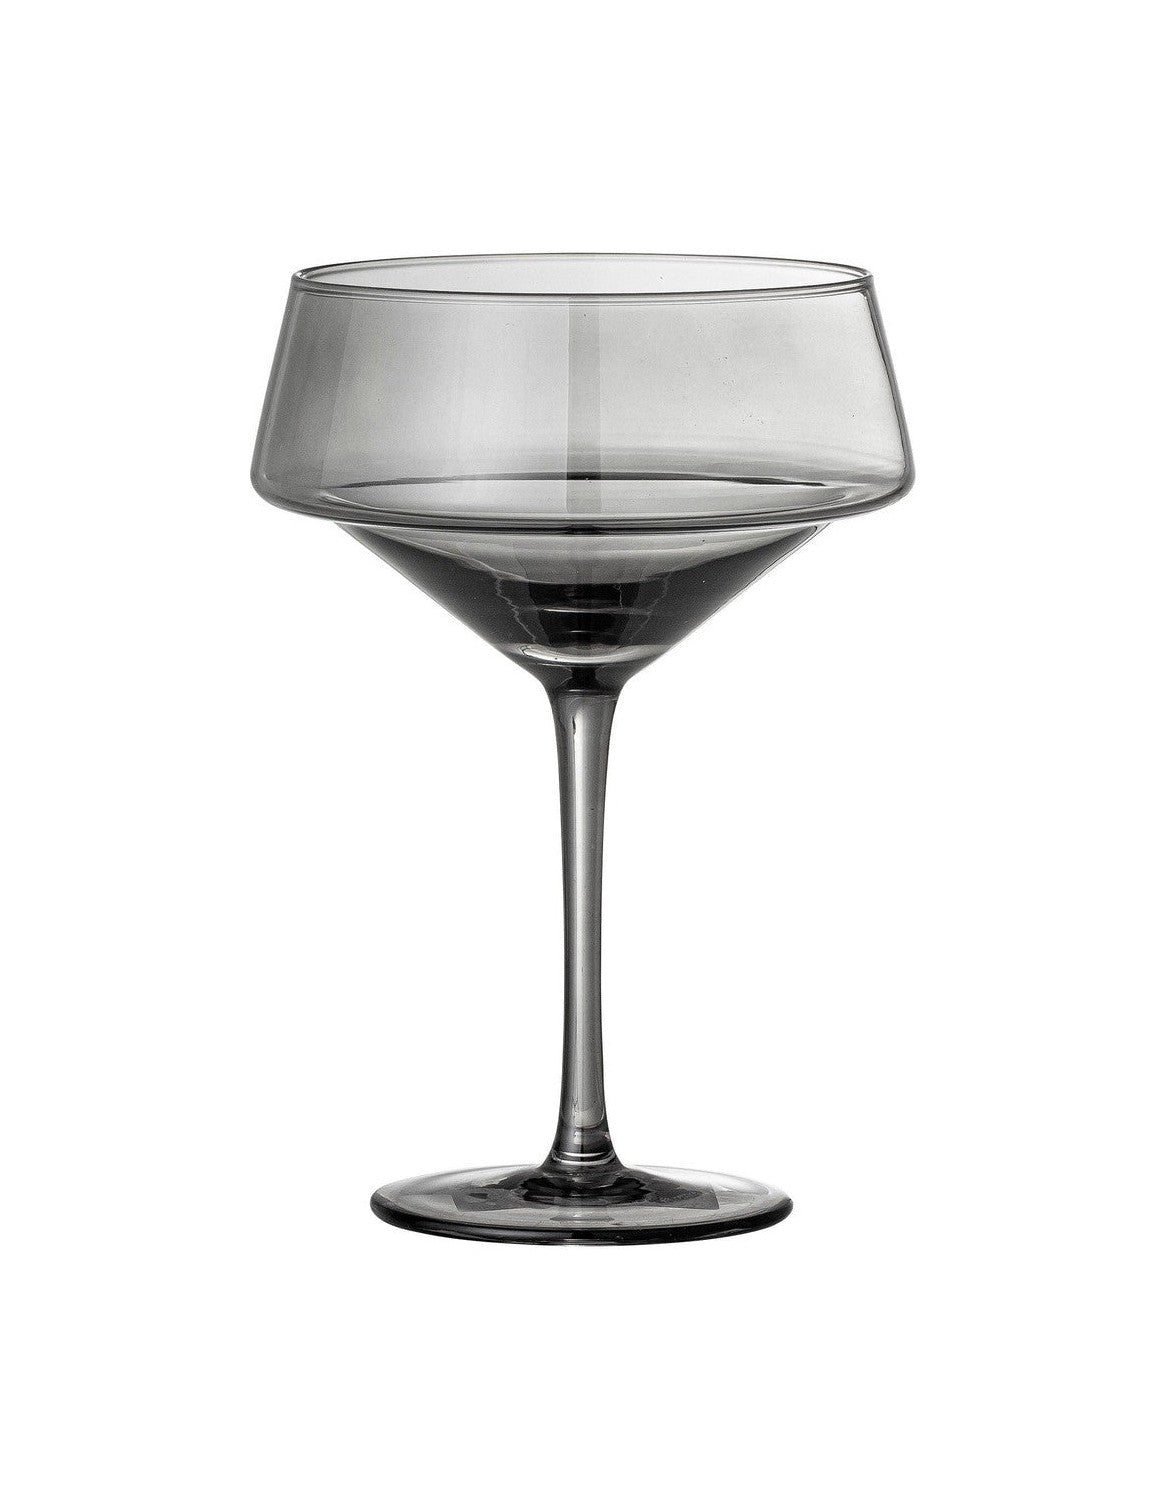 Bloomingville Yvette -cocktailglas, grijs, glas